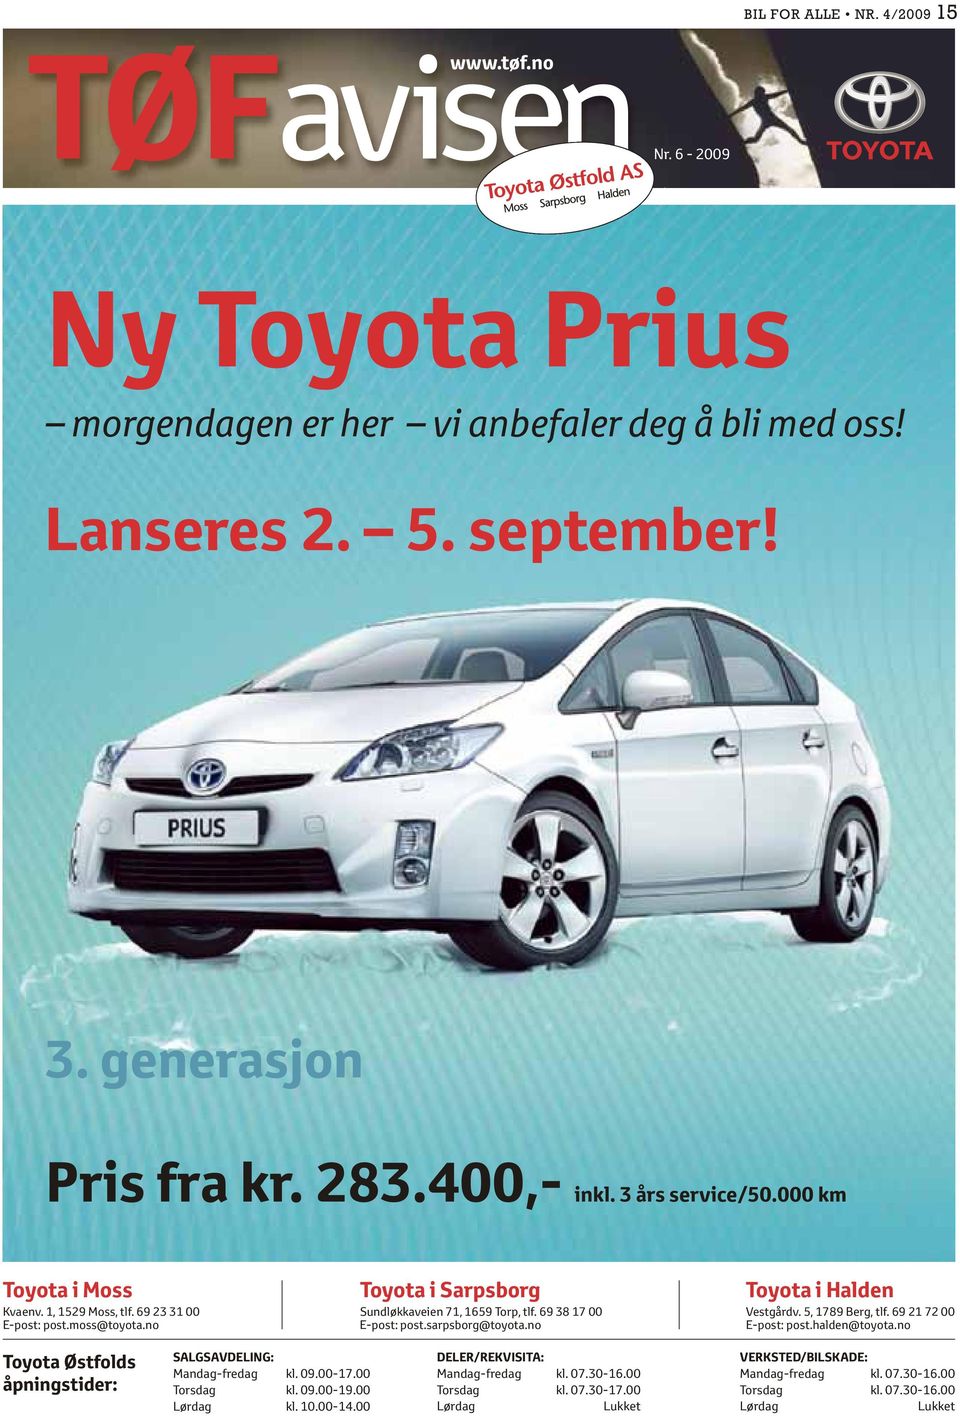 sarpsborg@toyota.no Toyota i Halden Vestgårdv. 5, 1789 Berg, tlf. 69 21 72 00 E-post: post.halden@toyota.no Toyota Østfolds åpningstider: SALGSAVDELING: Mandag-fredag kl. 09.00-17.